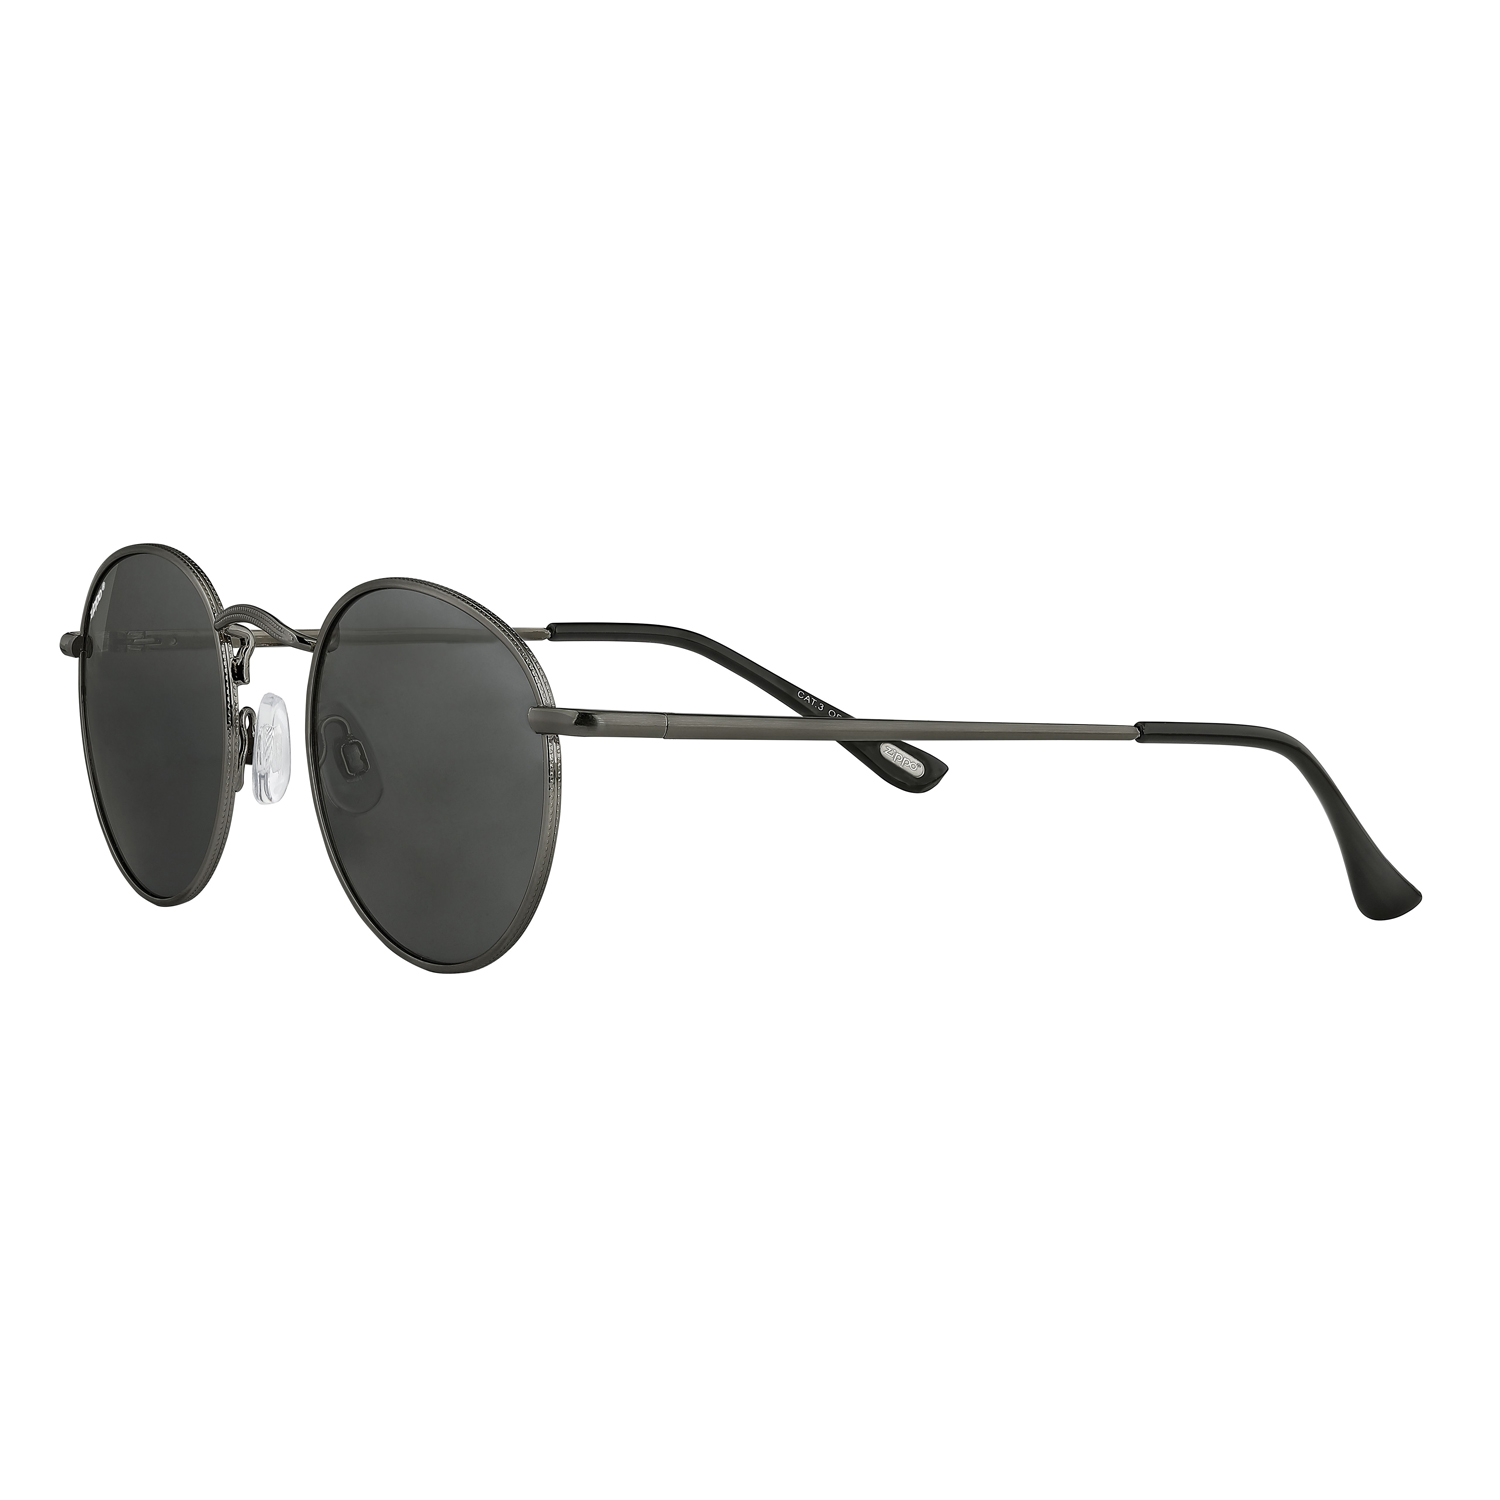 Очки солнцезащитные ZIPPO OB130-33, Мужские аксессуары, Солнцезащитные очки